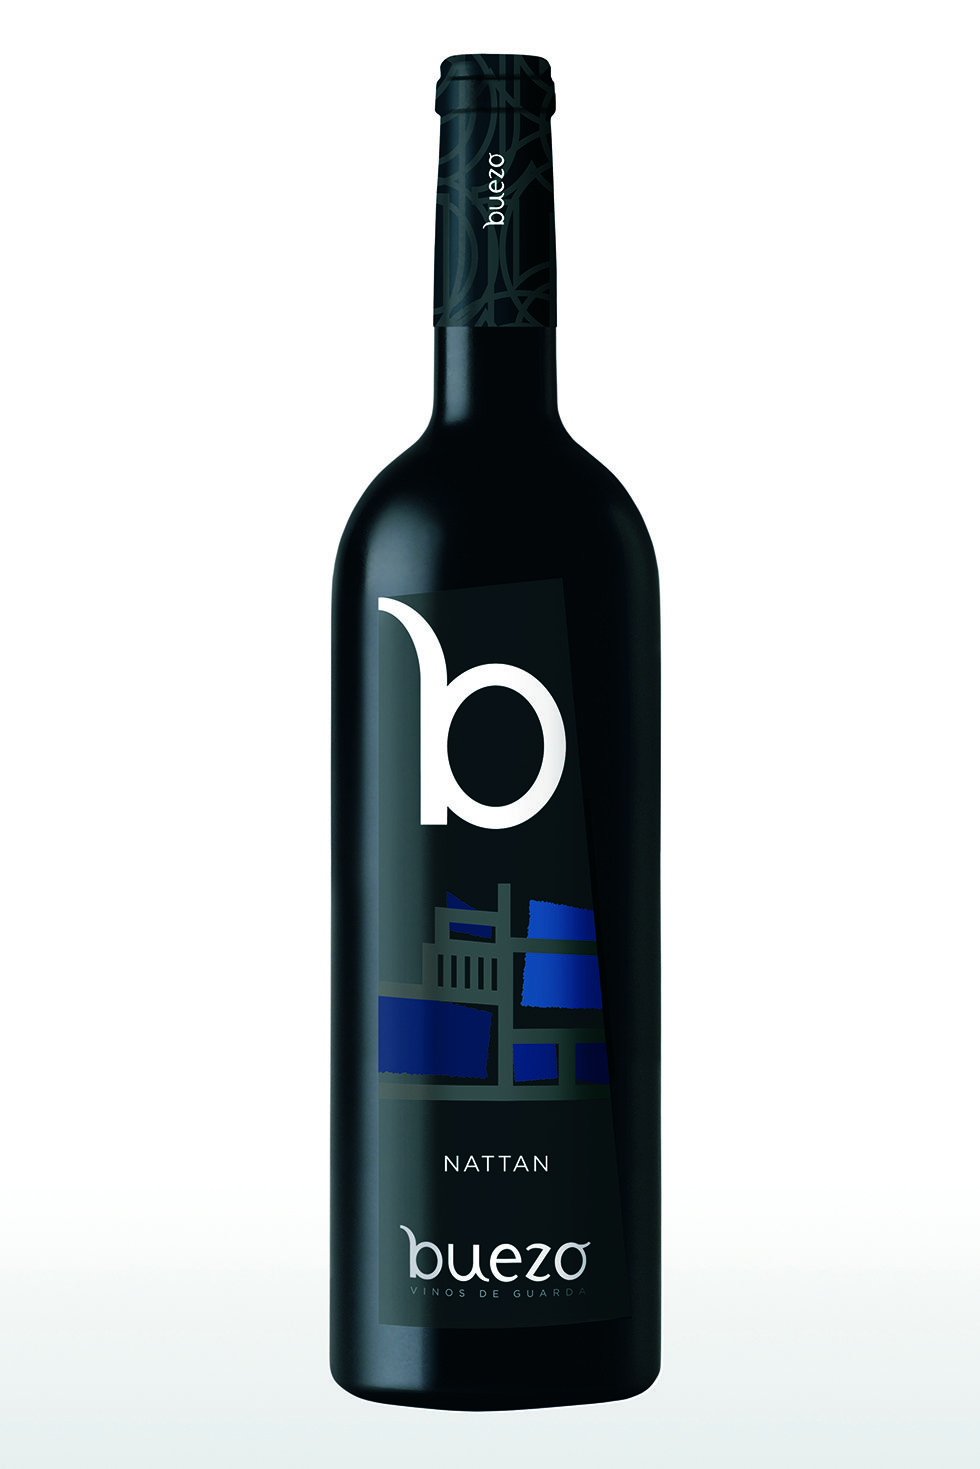 vino buezo nattan reserva 2005